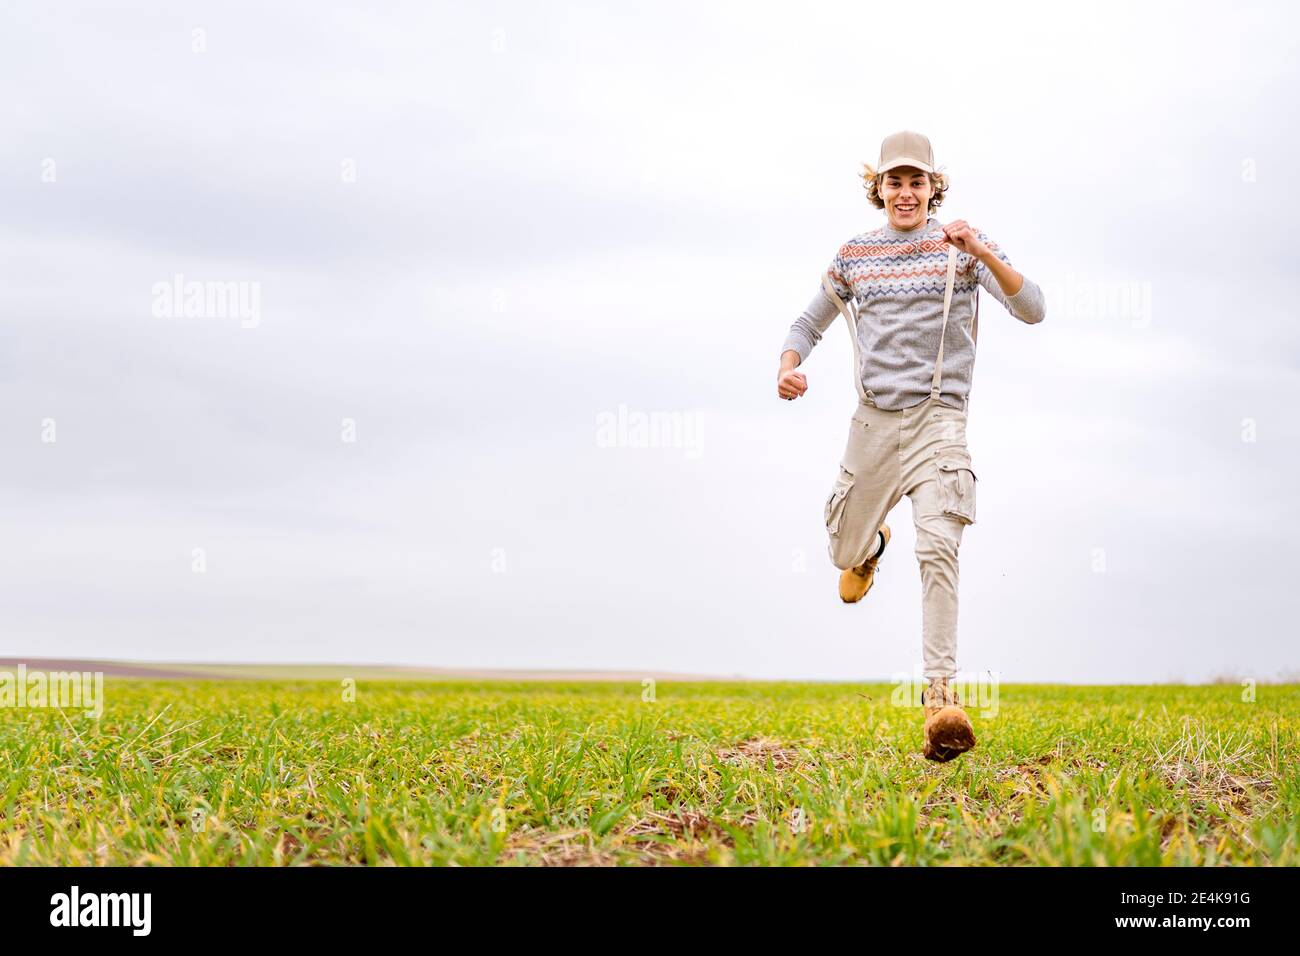 Jeune homme qui court vers l'appareil photo sur un terrain herbeux Banque D'Images